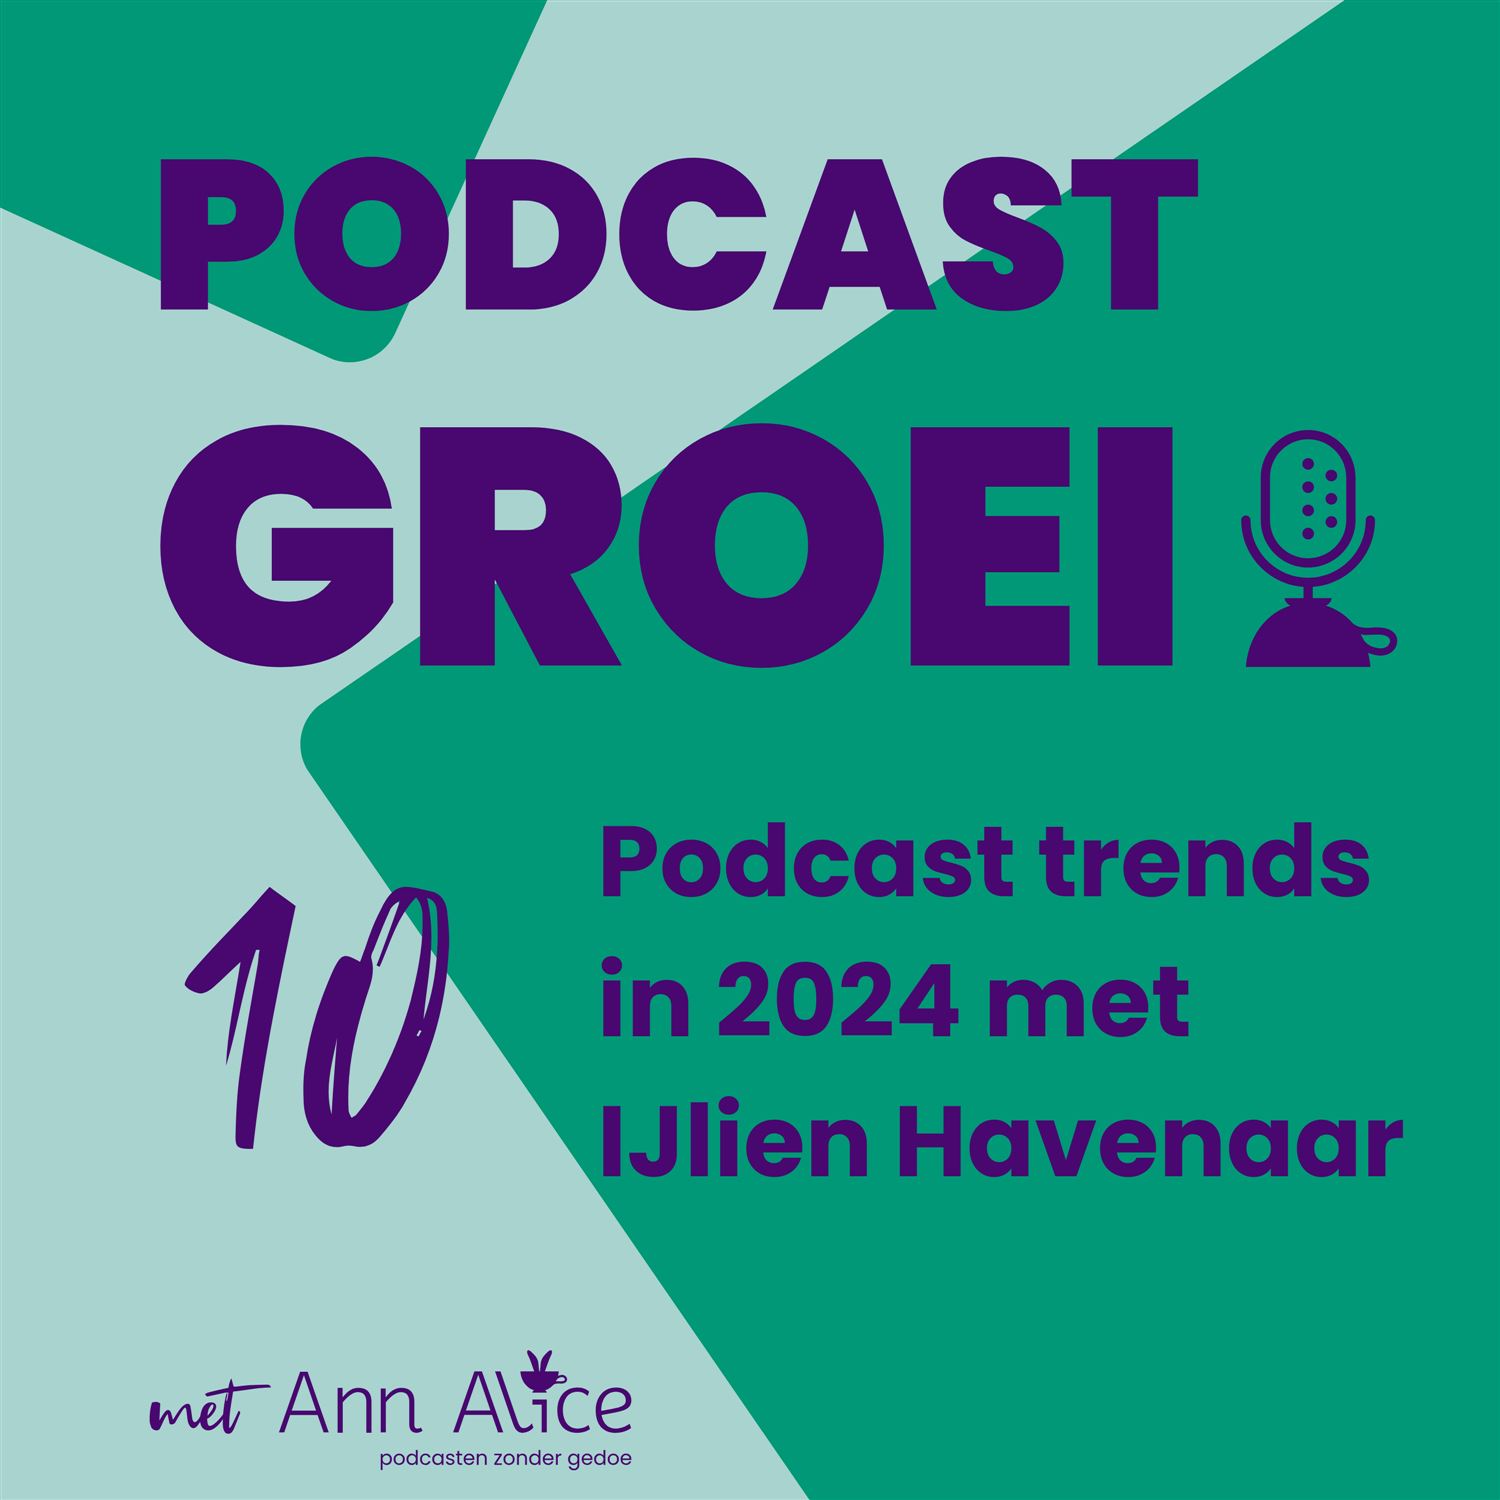 10. Podcast trends in 2024 met IJlien Havenaar